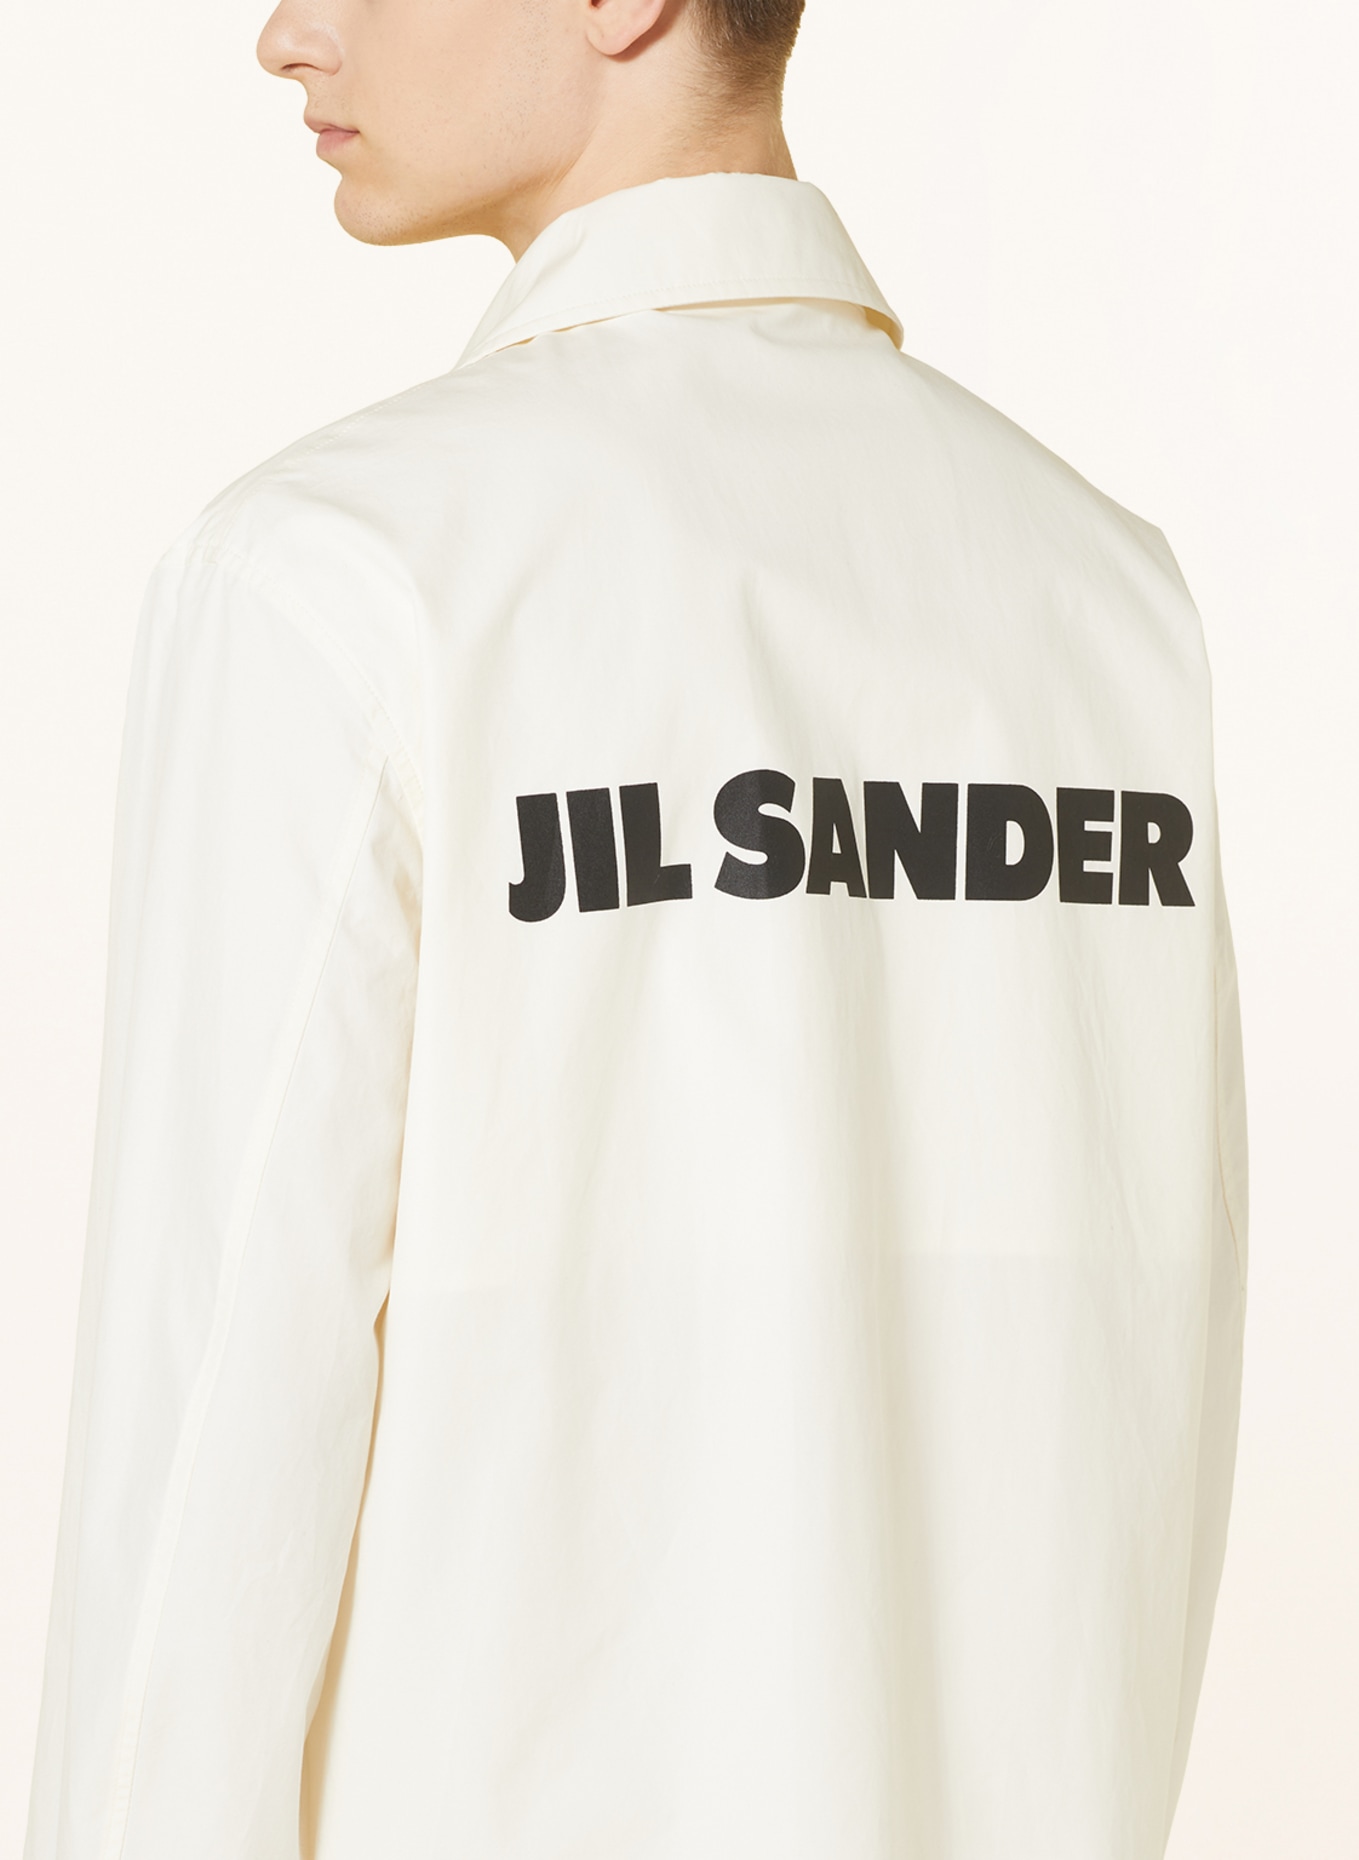 JIL SANDER Overshirt, Color: ECRU (Image 4)